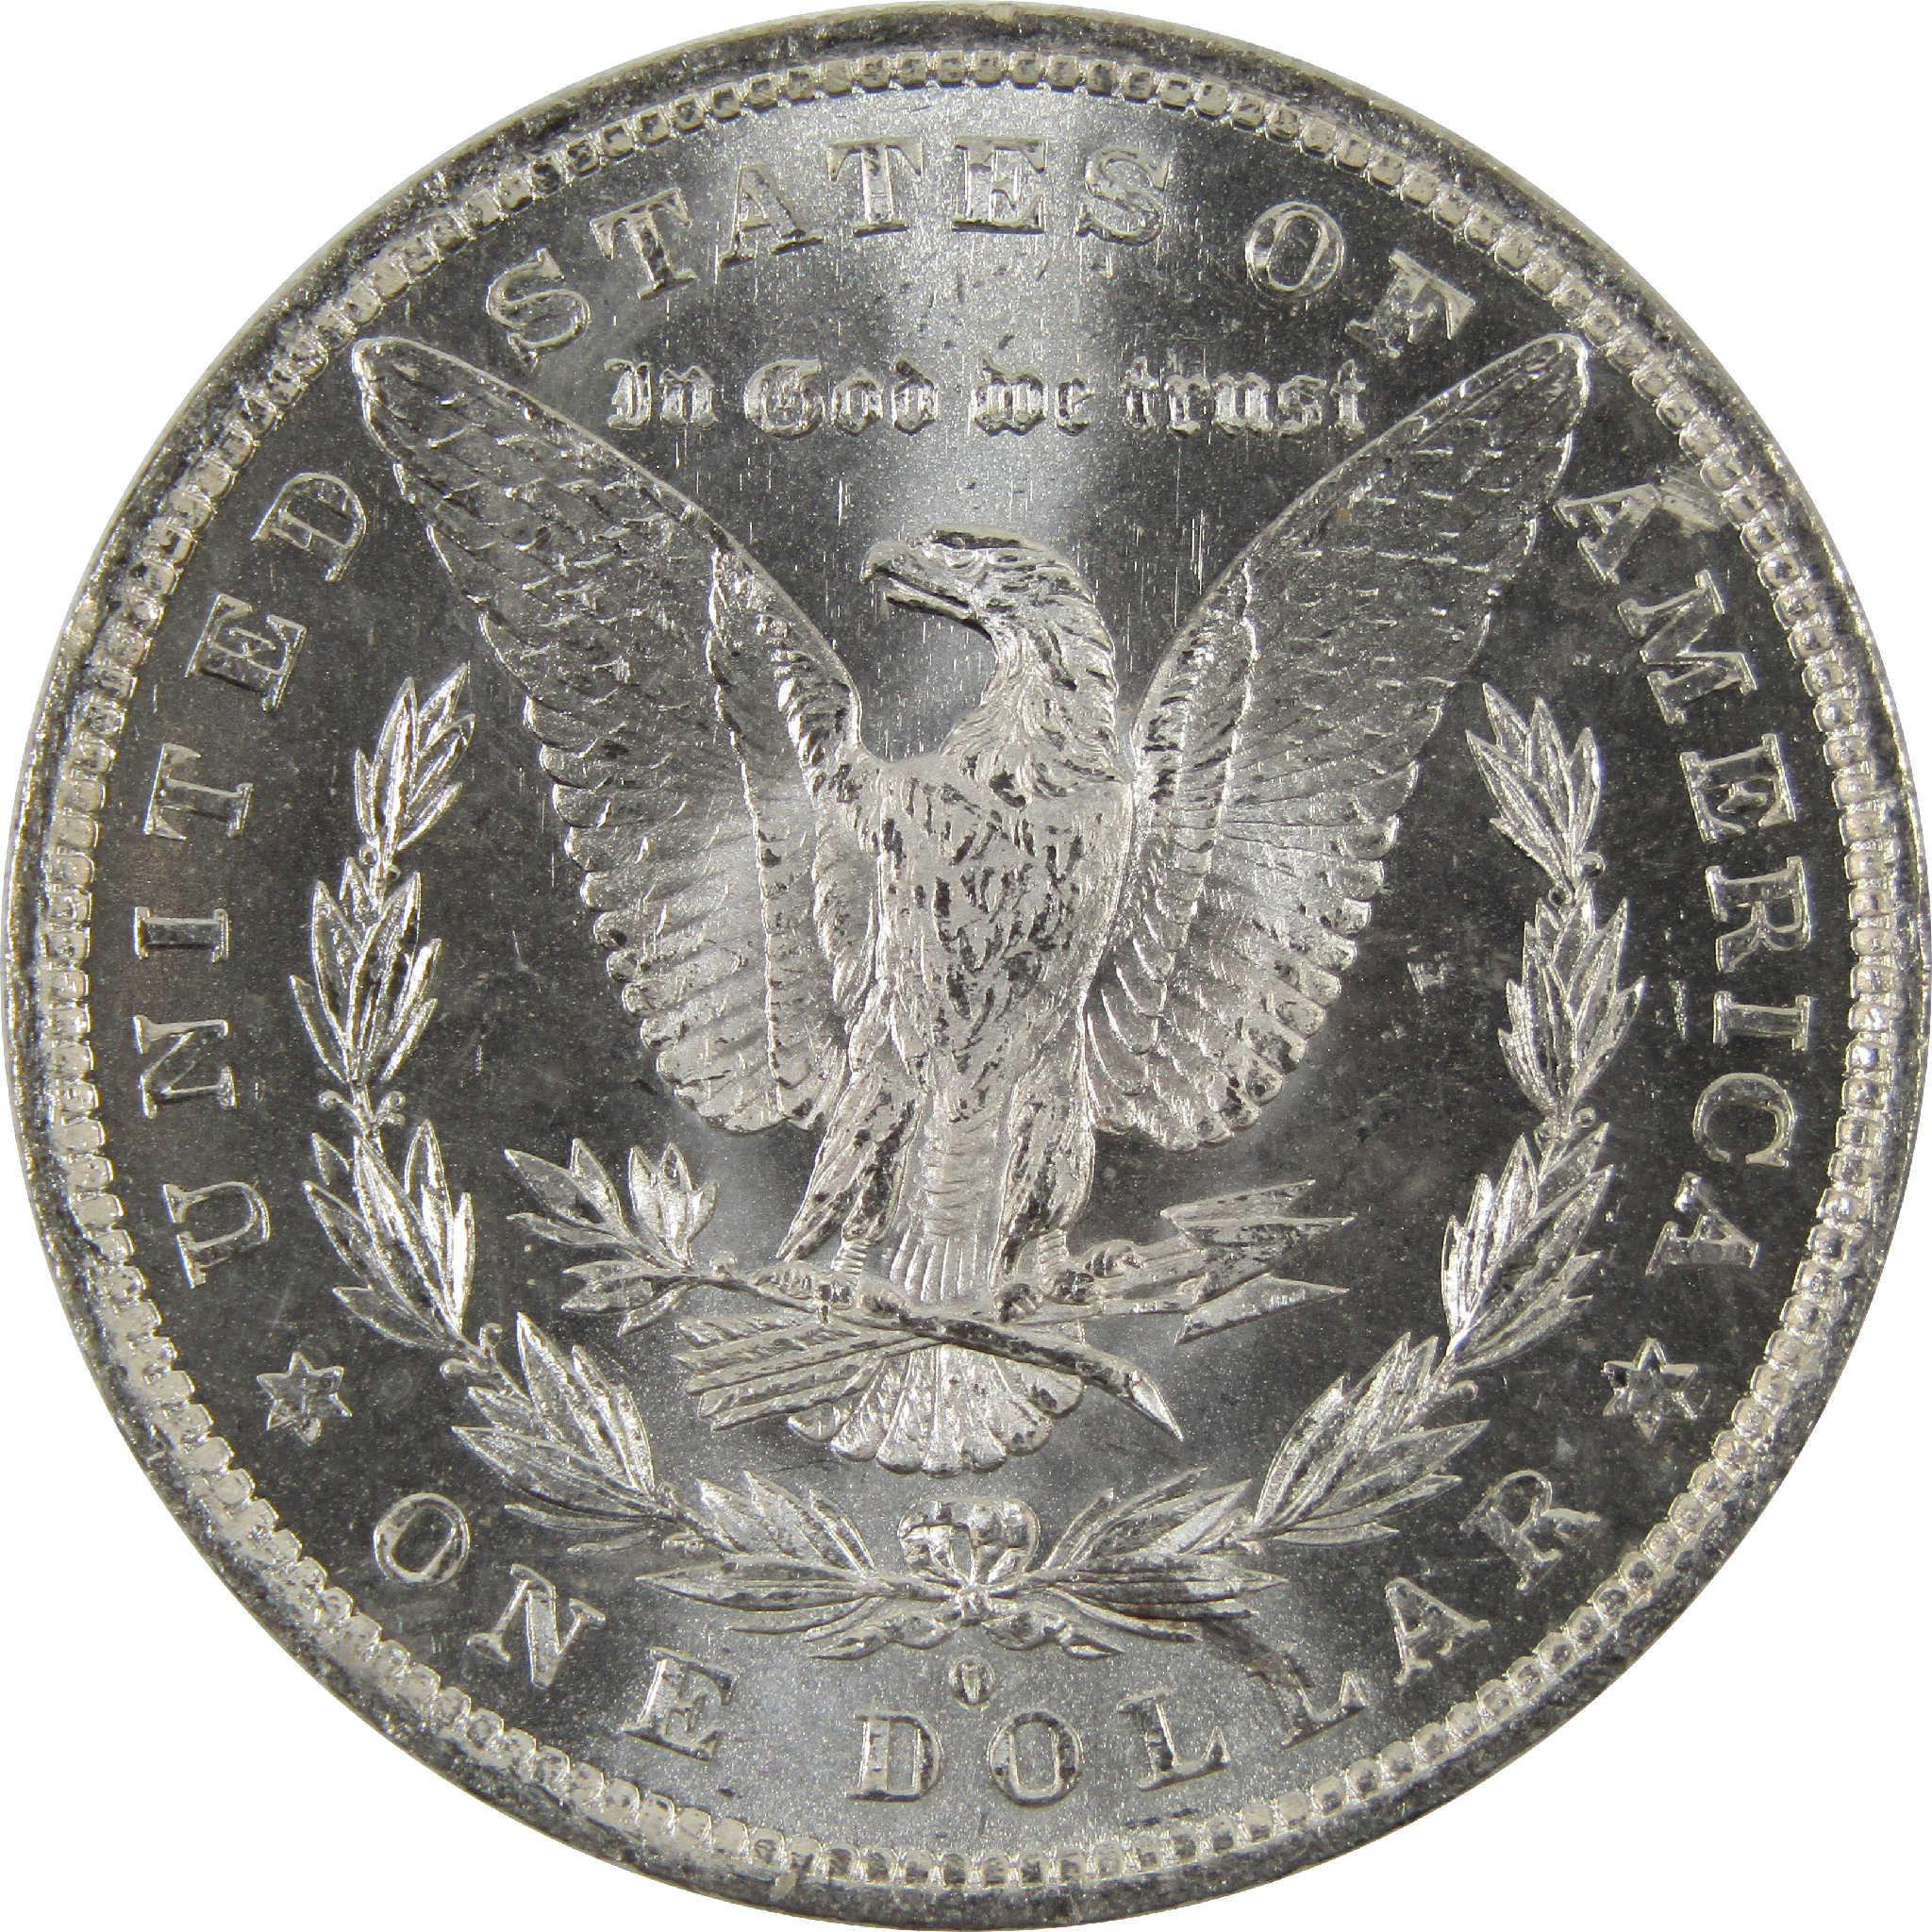 1882 O Morgan Dollar BU Uncirculated 90% Silver $1 Coin SKU:I8916 - Morgan coin - Morgan silver dollar - Morgan silver dollar for sale - Profile Coins &amp; Collectibles